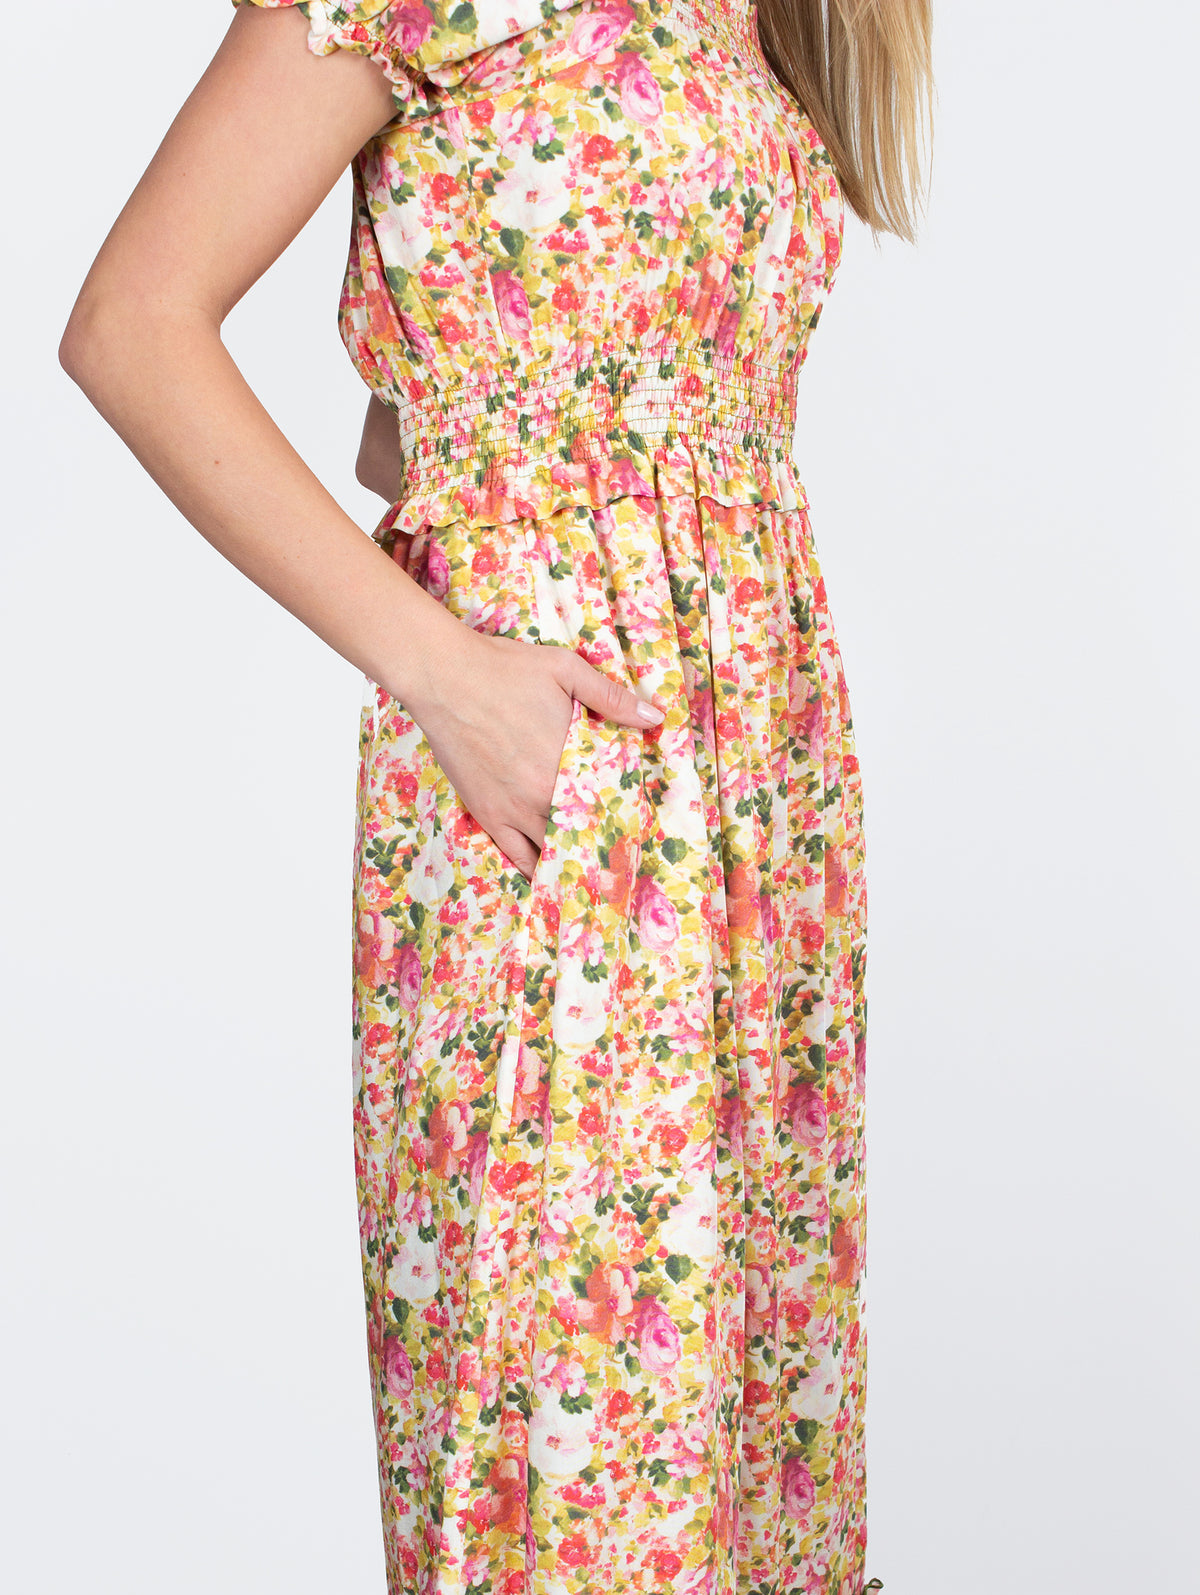 Loretta Caponi Stefania floral-print dress